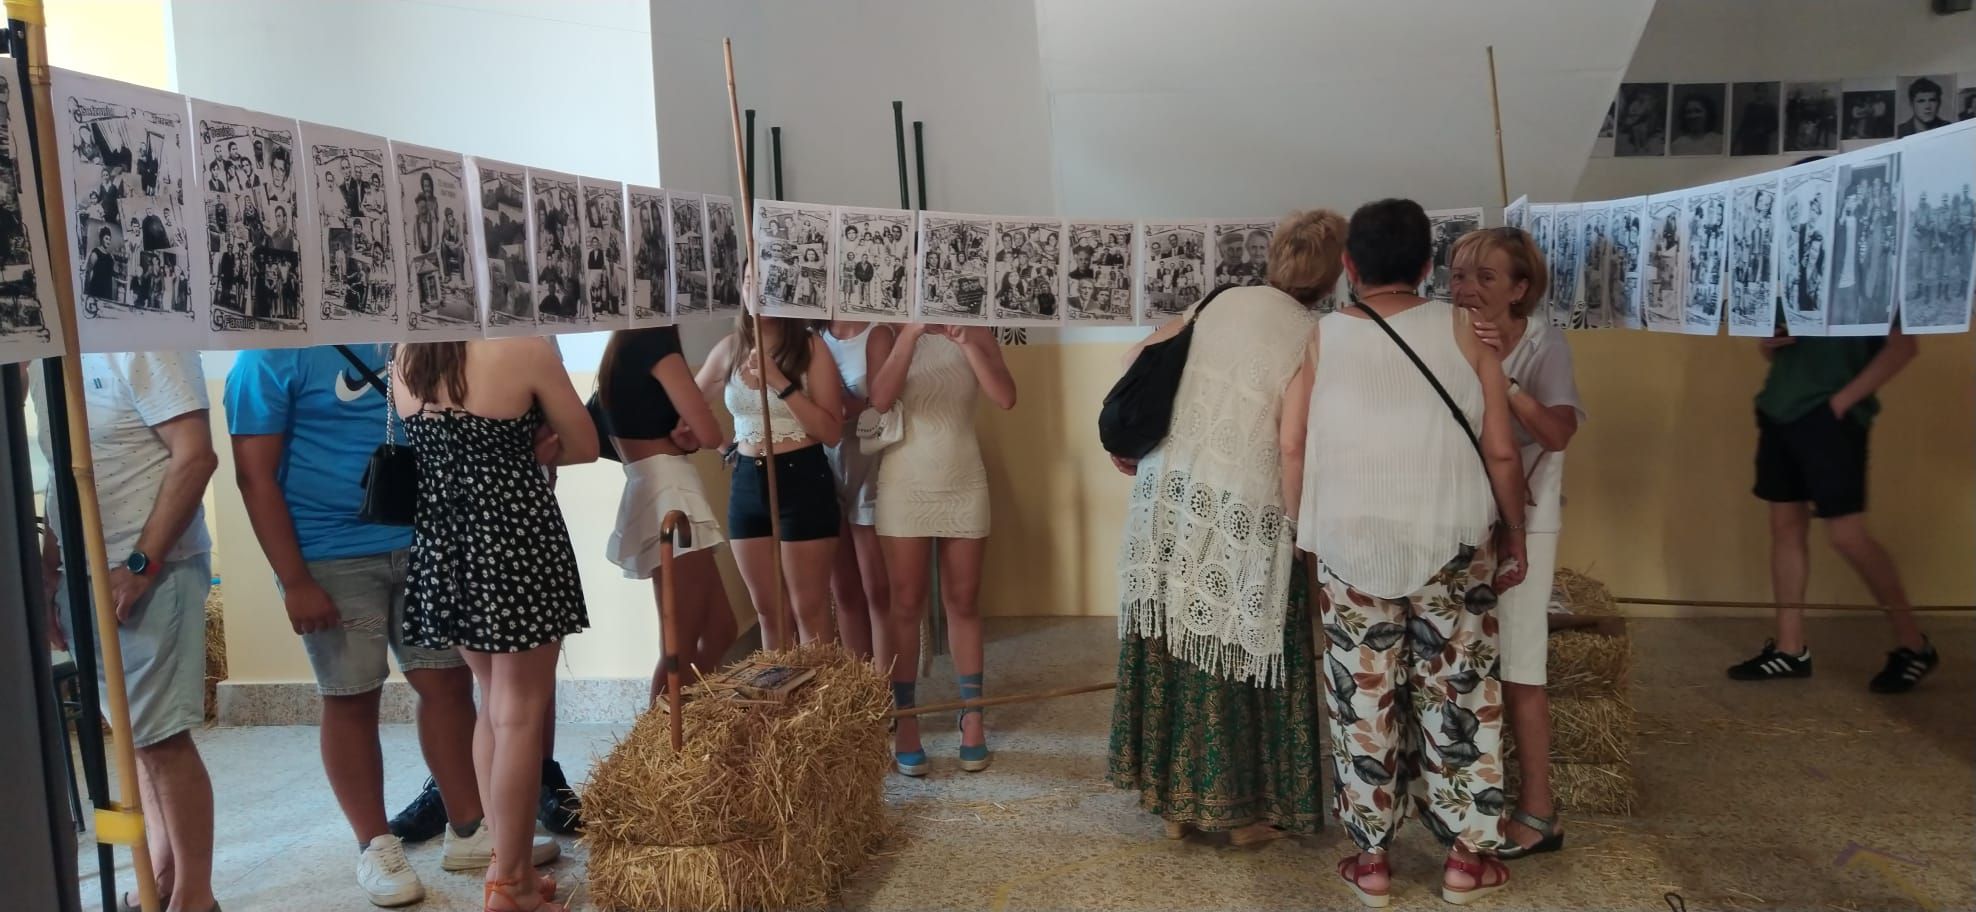 Exposición "Mirando al pasado" de Villaescusa